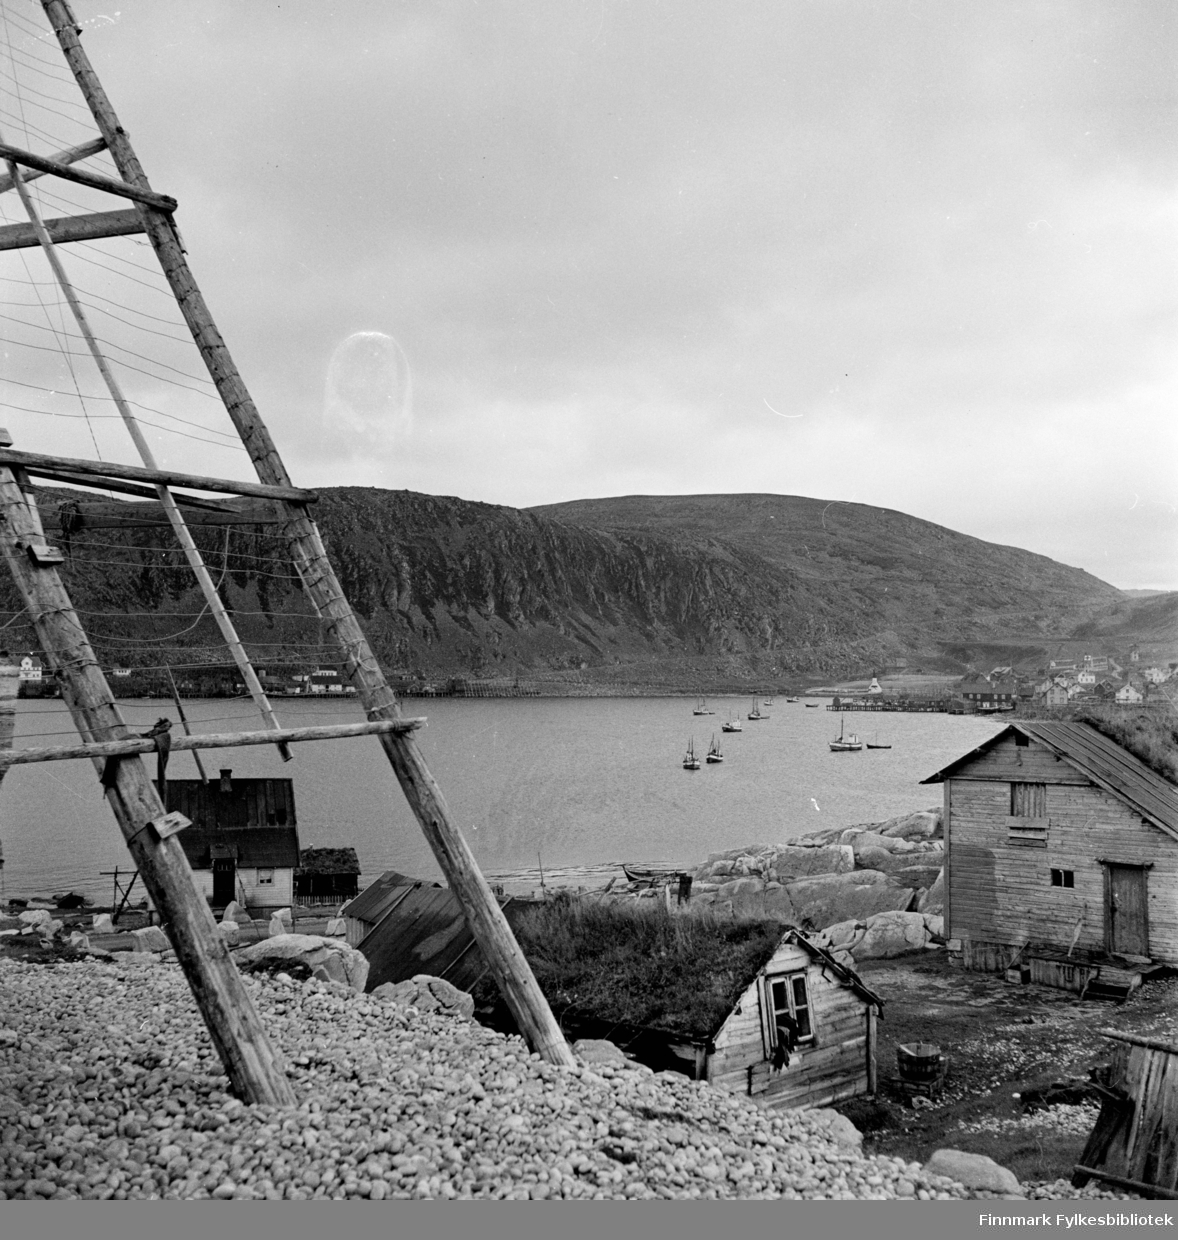 Kjøllefjord 1940. I forkant står det en fiskehjell, bildet viser utsikten  innover mot Kjøllefjord med et torvhus i forgrunnen, bakover sees trehusbebyggelse og fiskebåter oppankret i Kjøllefjorden.